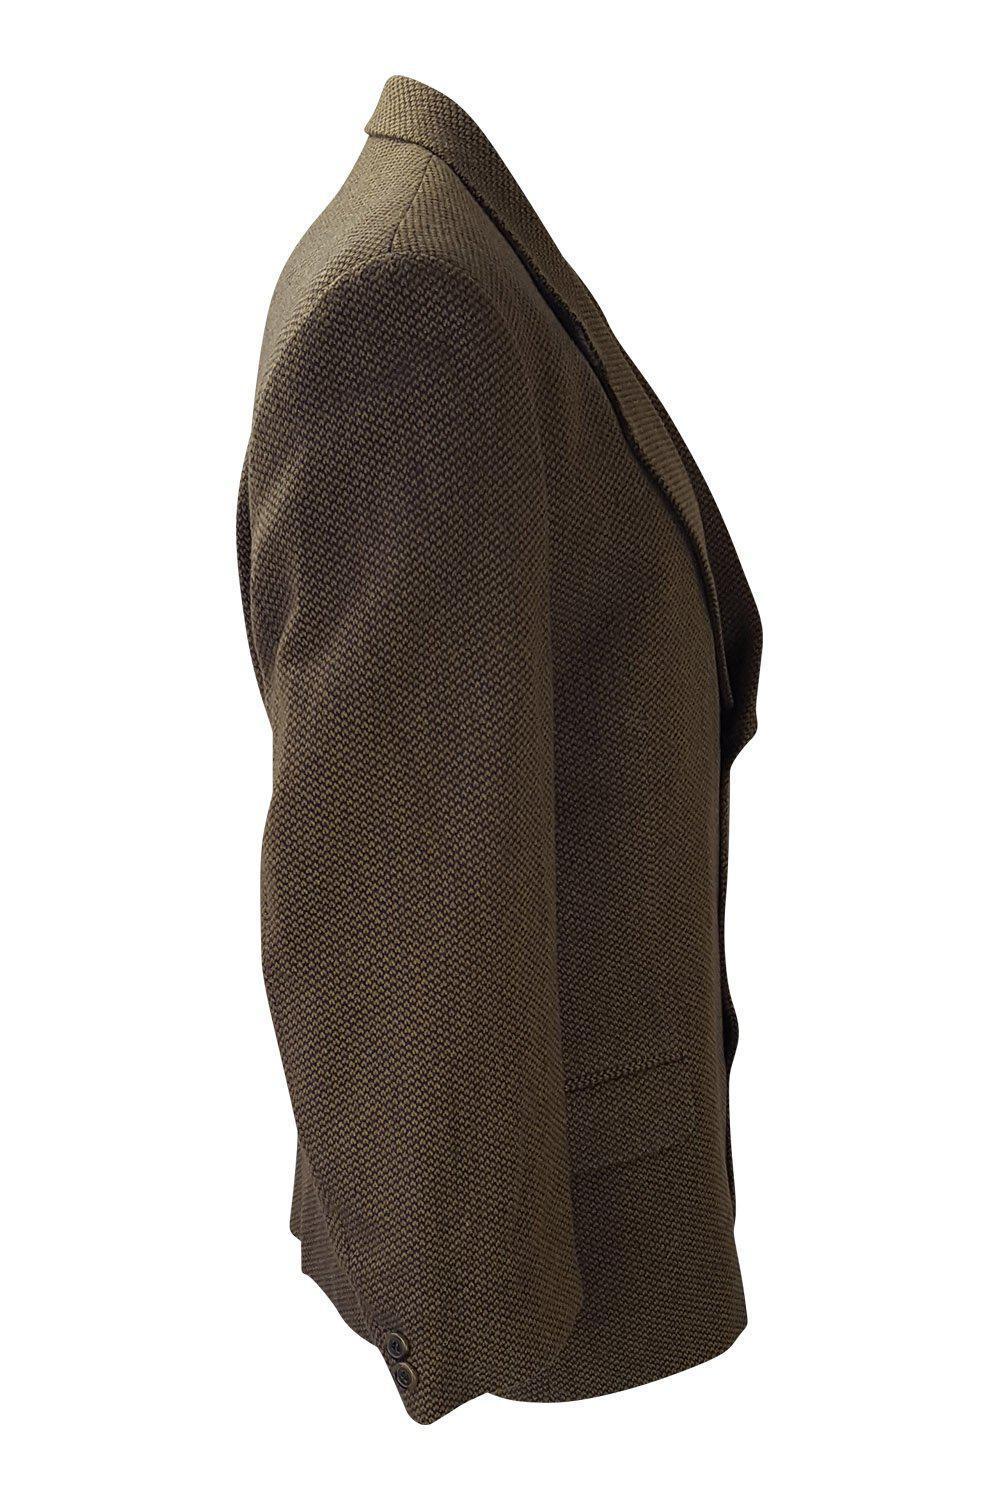 YVES SAINT LAURENT Men's Vintage Brown Wool Blend Single Breast Jacket-Yves Saint Laurent-The Freperie